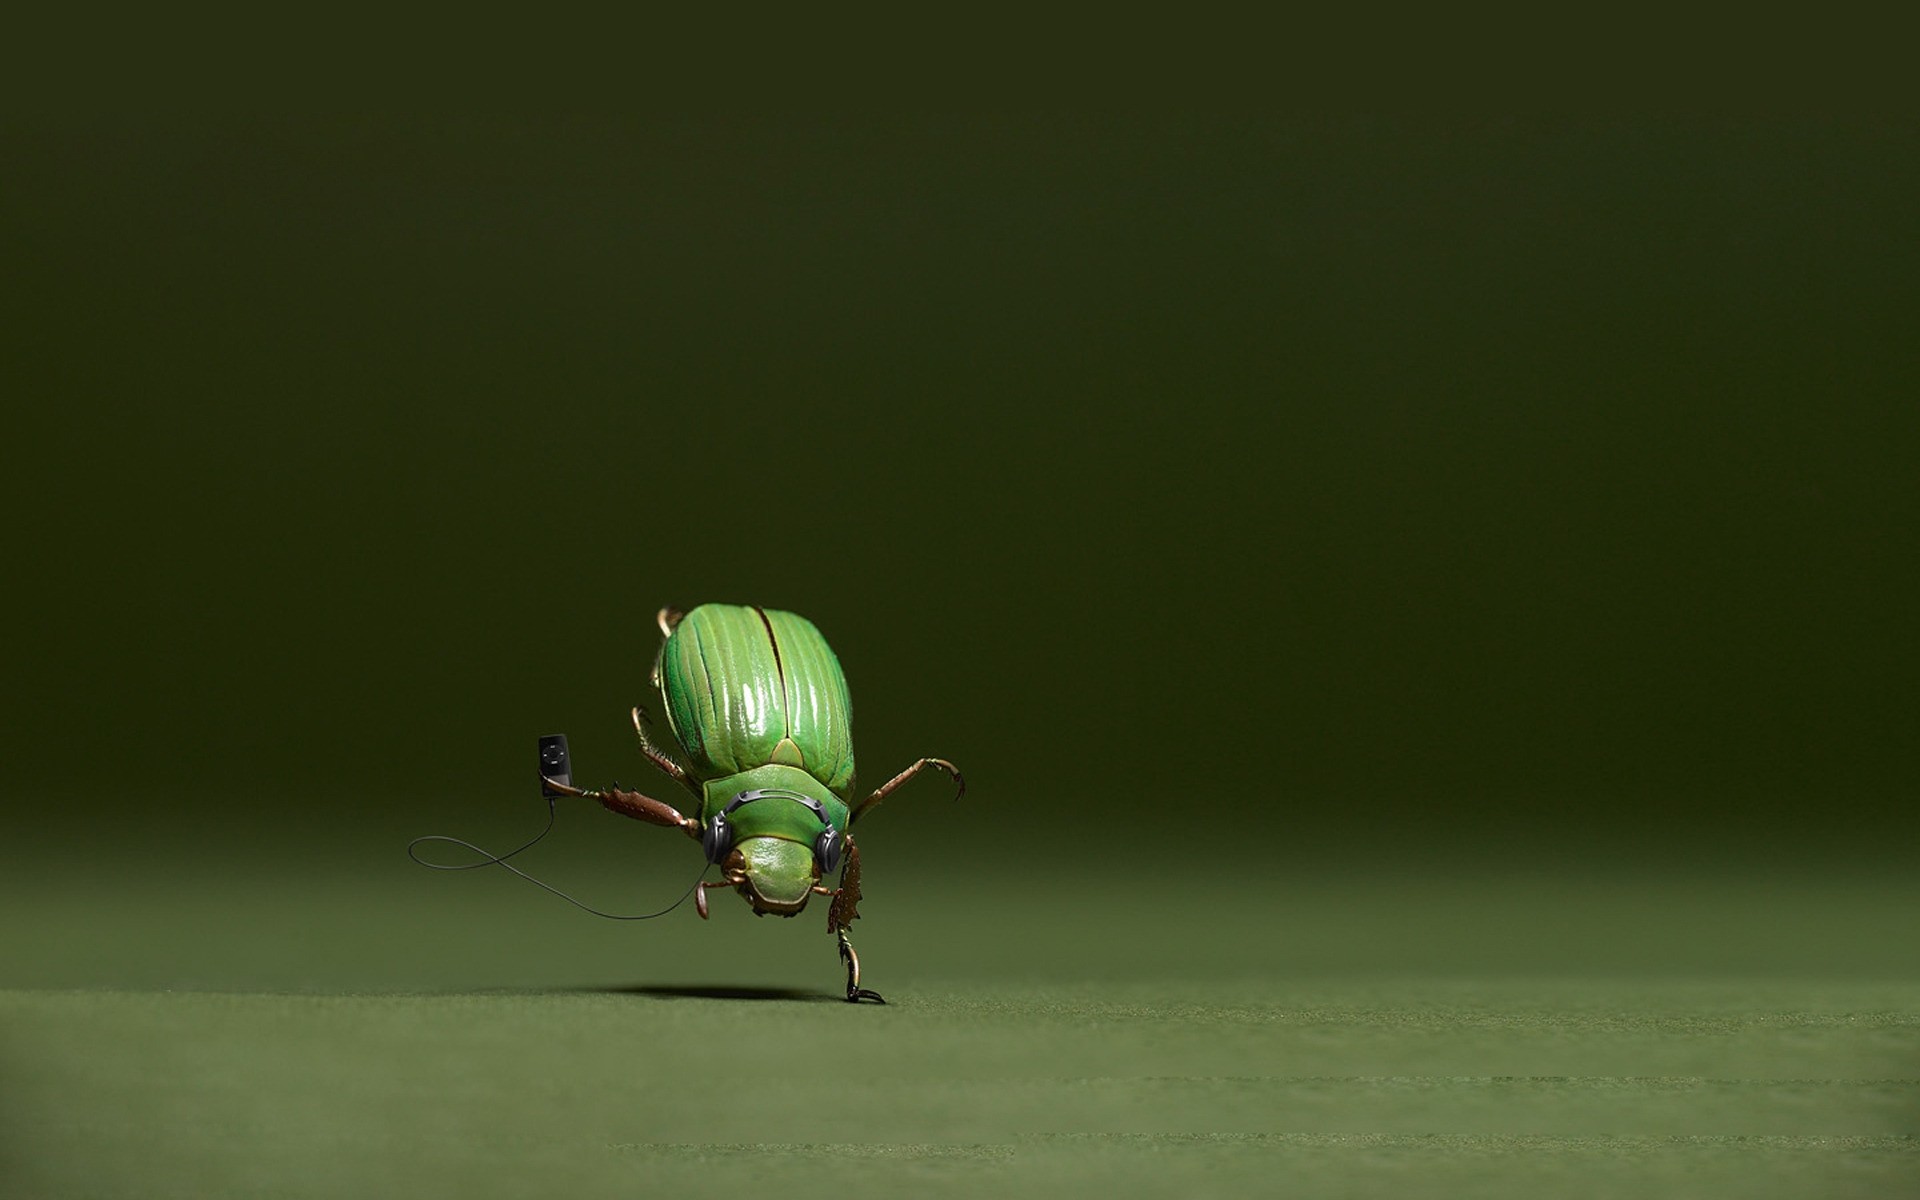 photo manipulation insect beetle nature wildlife leaf ladybug grass rain animal fly